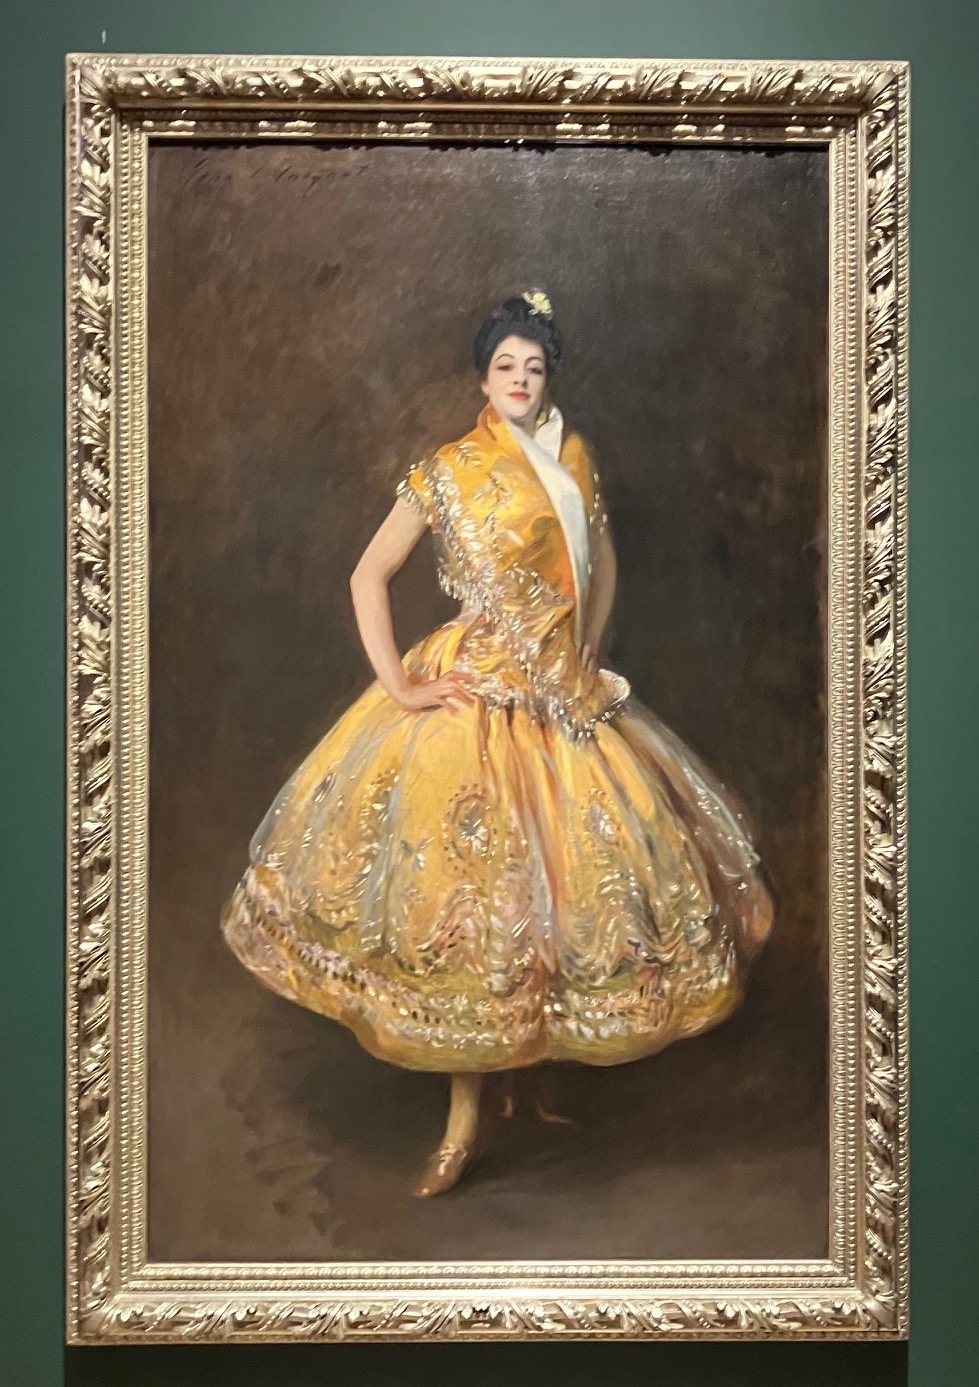 La Carmencita, by John Singer Sargent (1890), Musée d'Orsay, Paris.